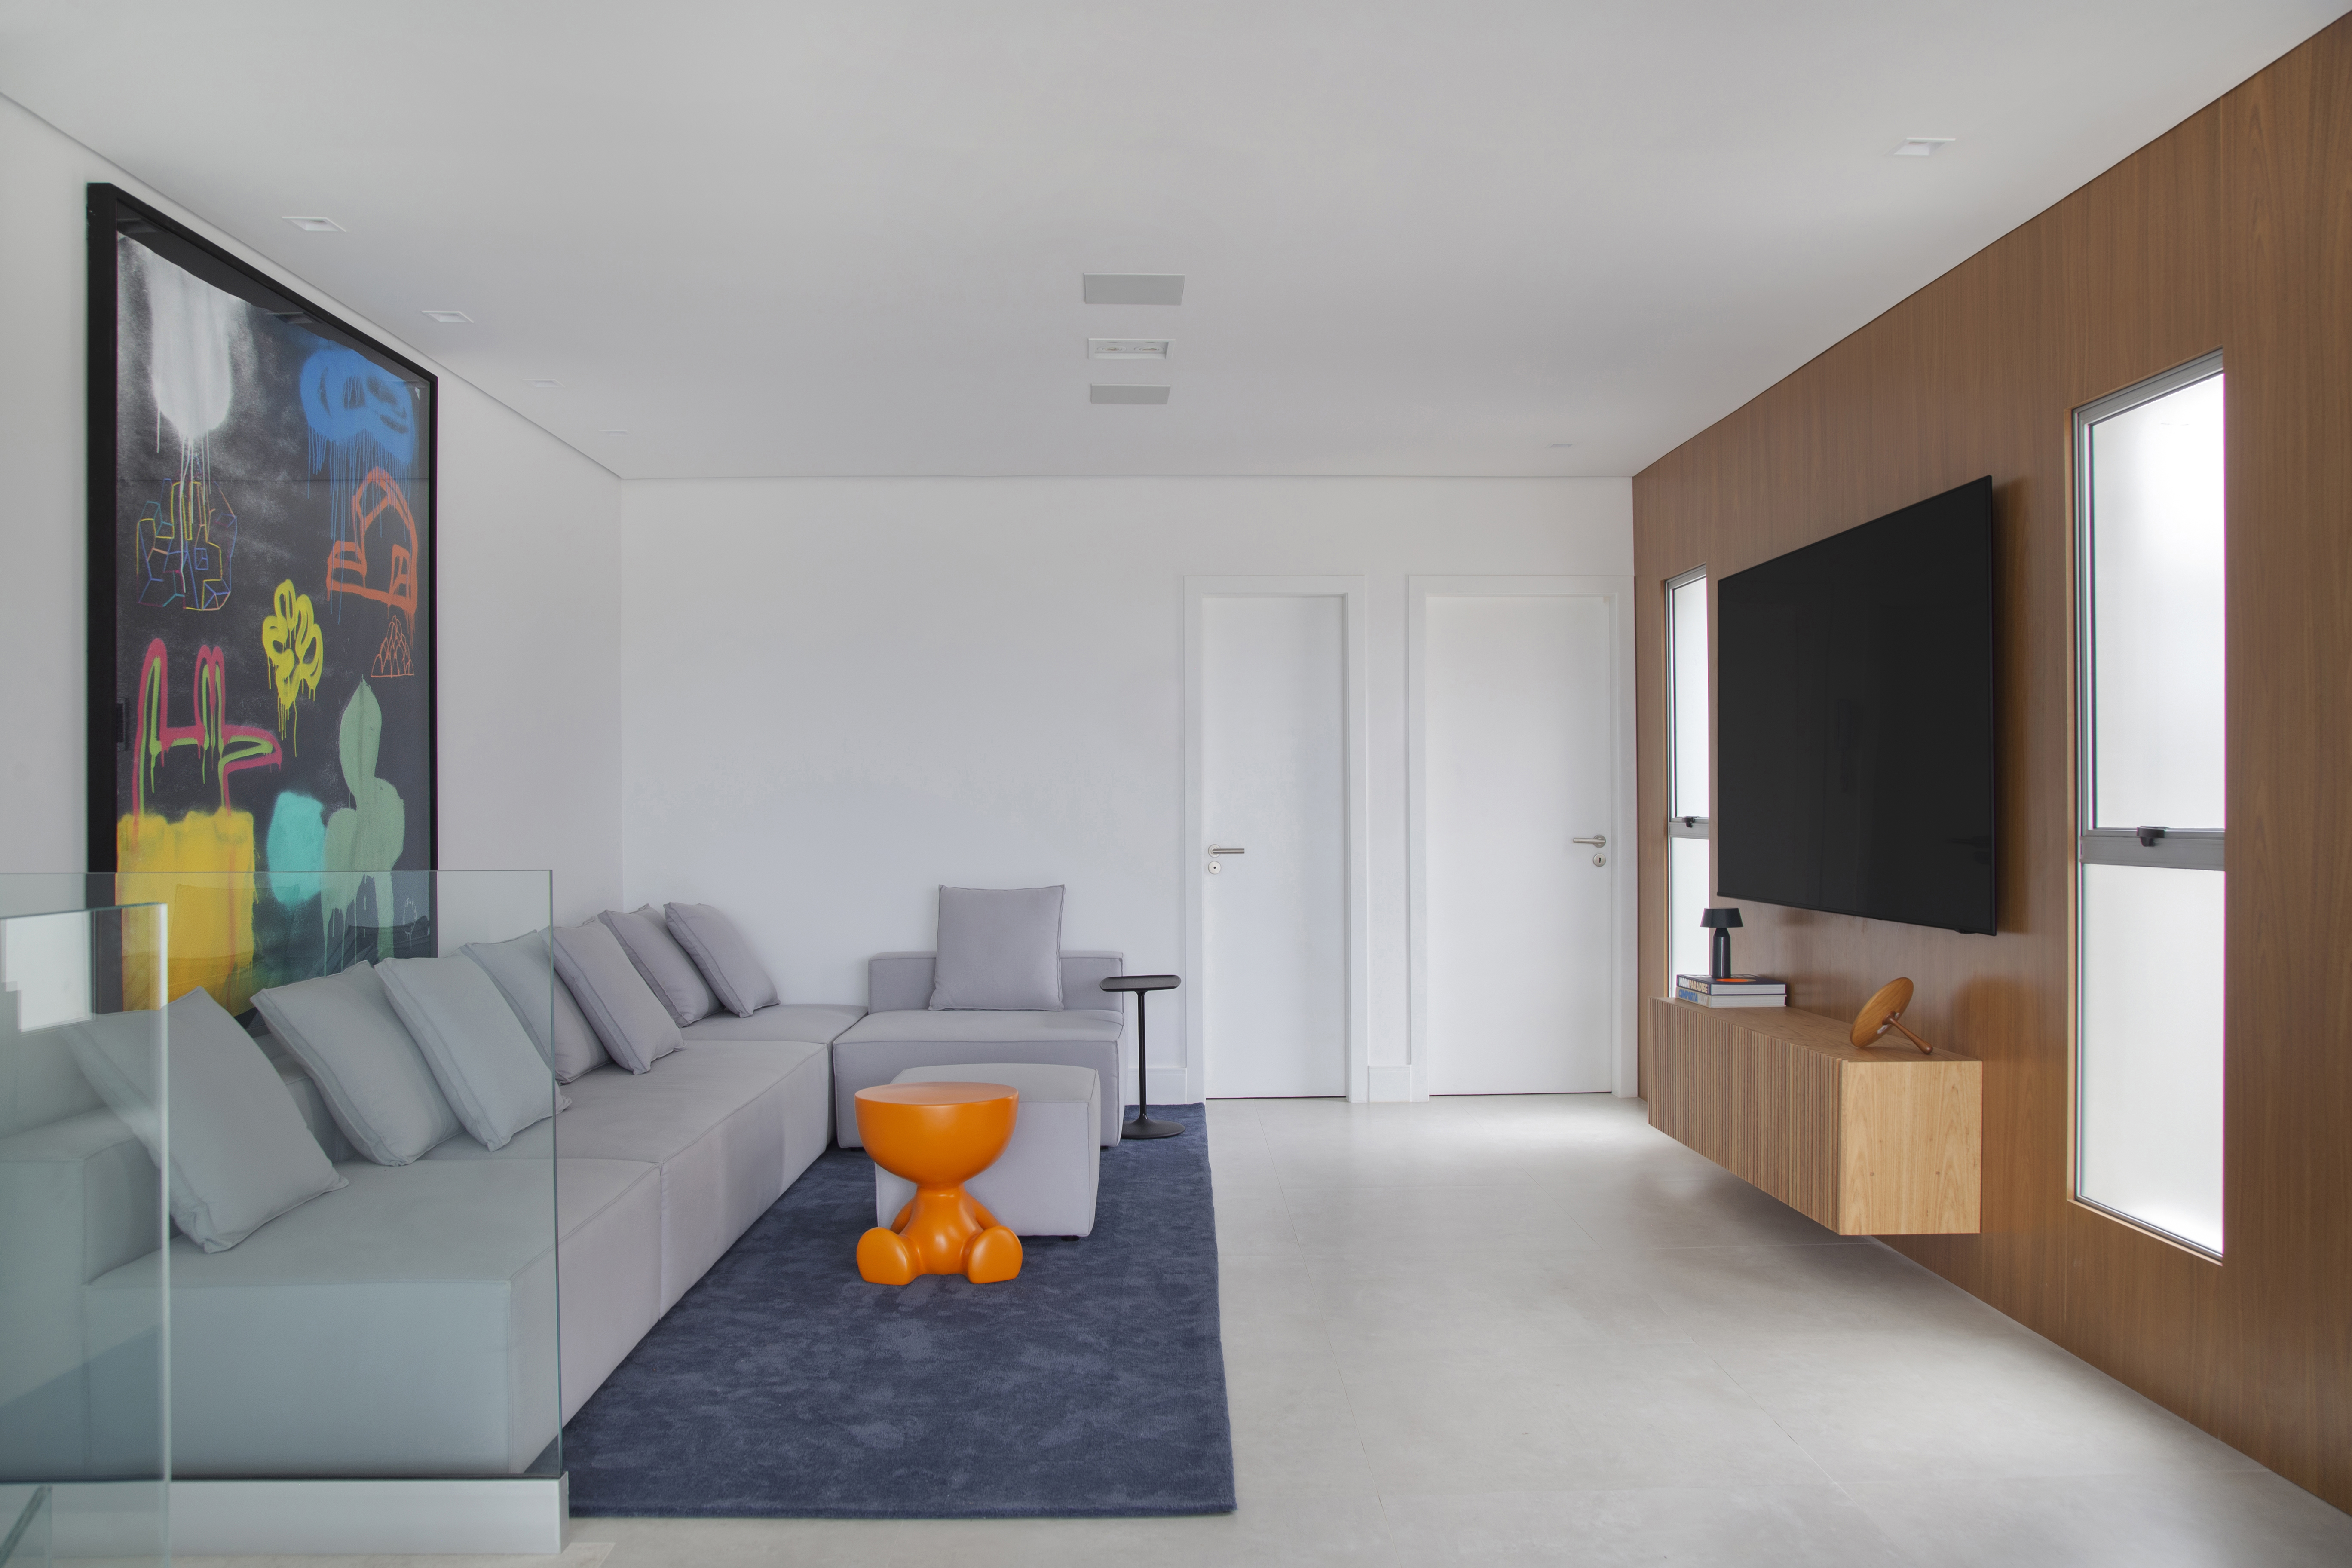 Cobertura de 400m² para irmãos gêmeos tem closet espaçoso de 32m². Projeto de Tom Castro. Na foto, sala com sofá cinza, tapete azul e tv.